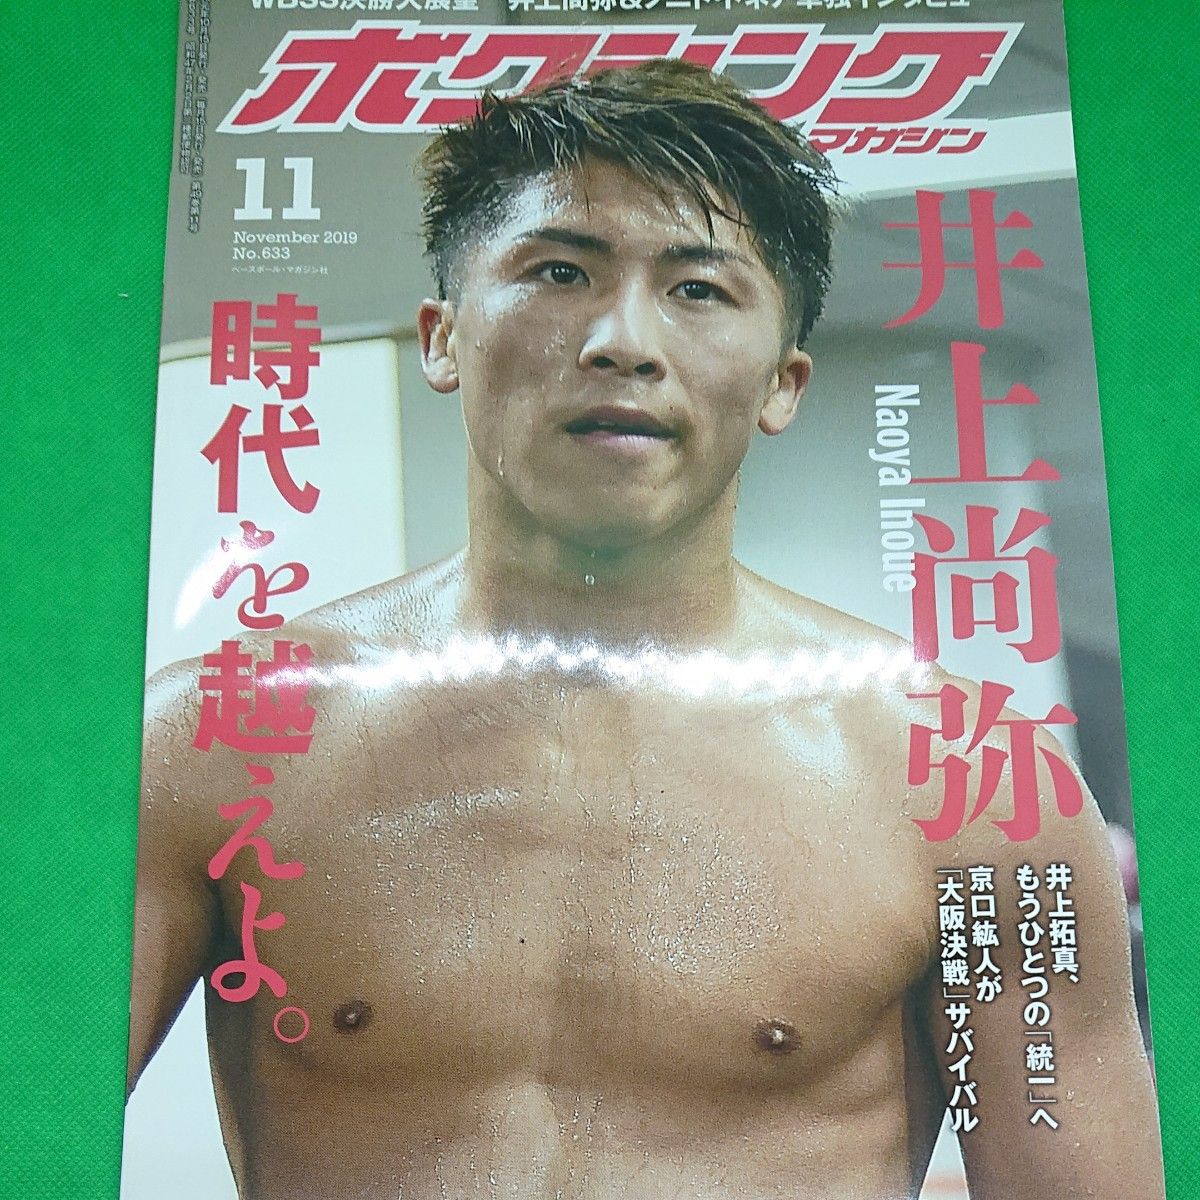 井上尚弥×ロドリゲス WBSS準決勝！ボクシングマガジン2019年 下半期６冊